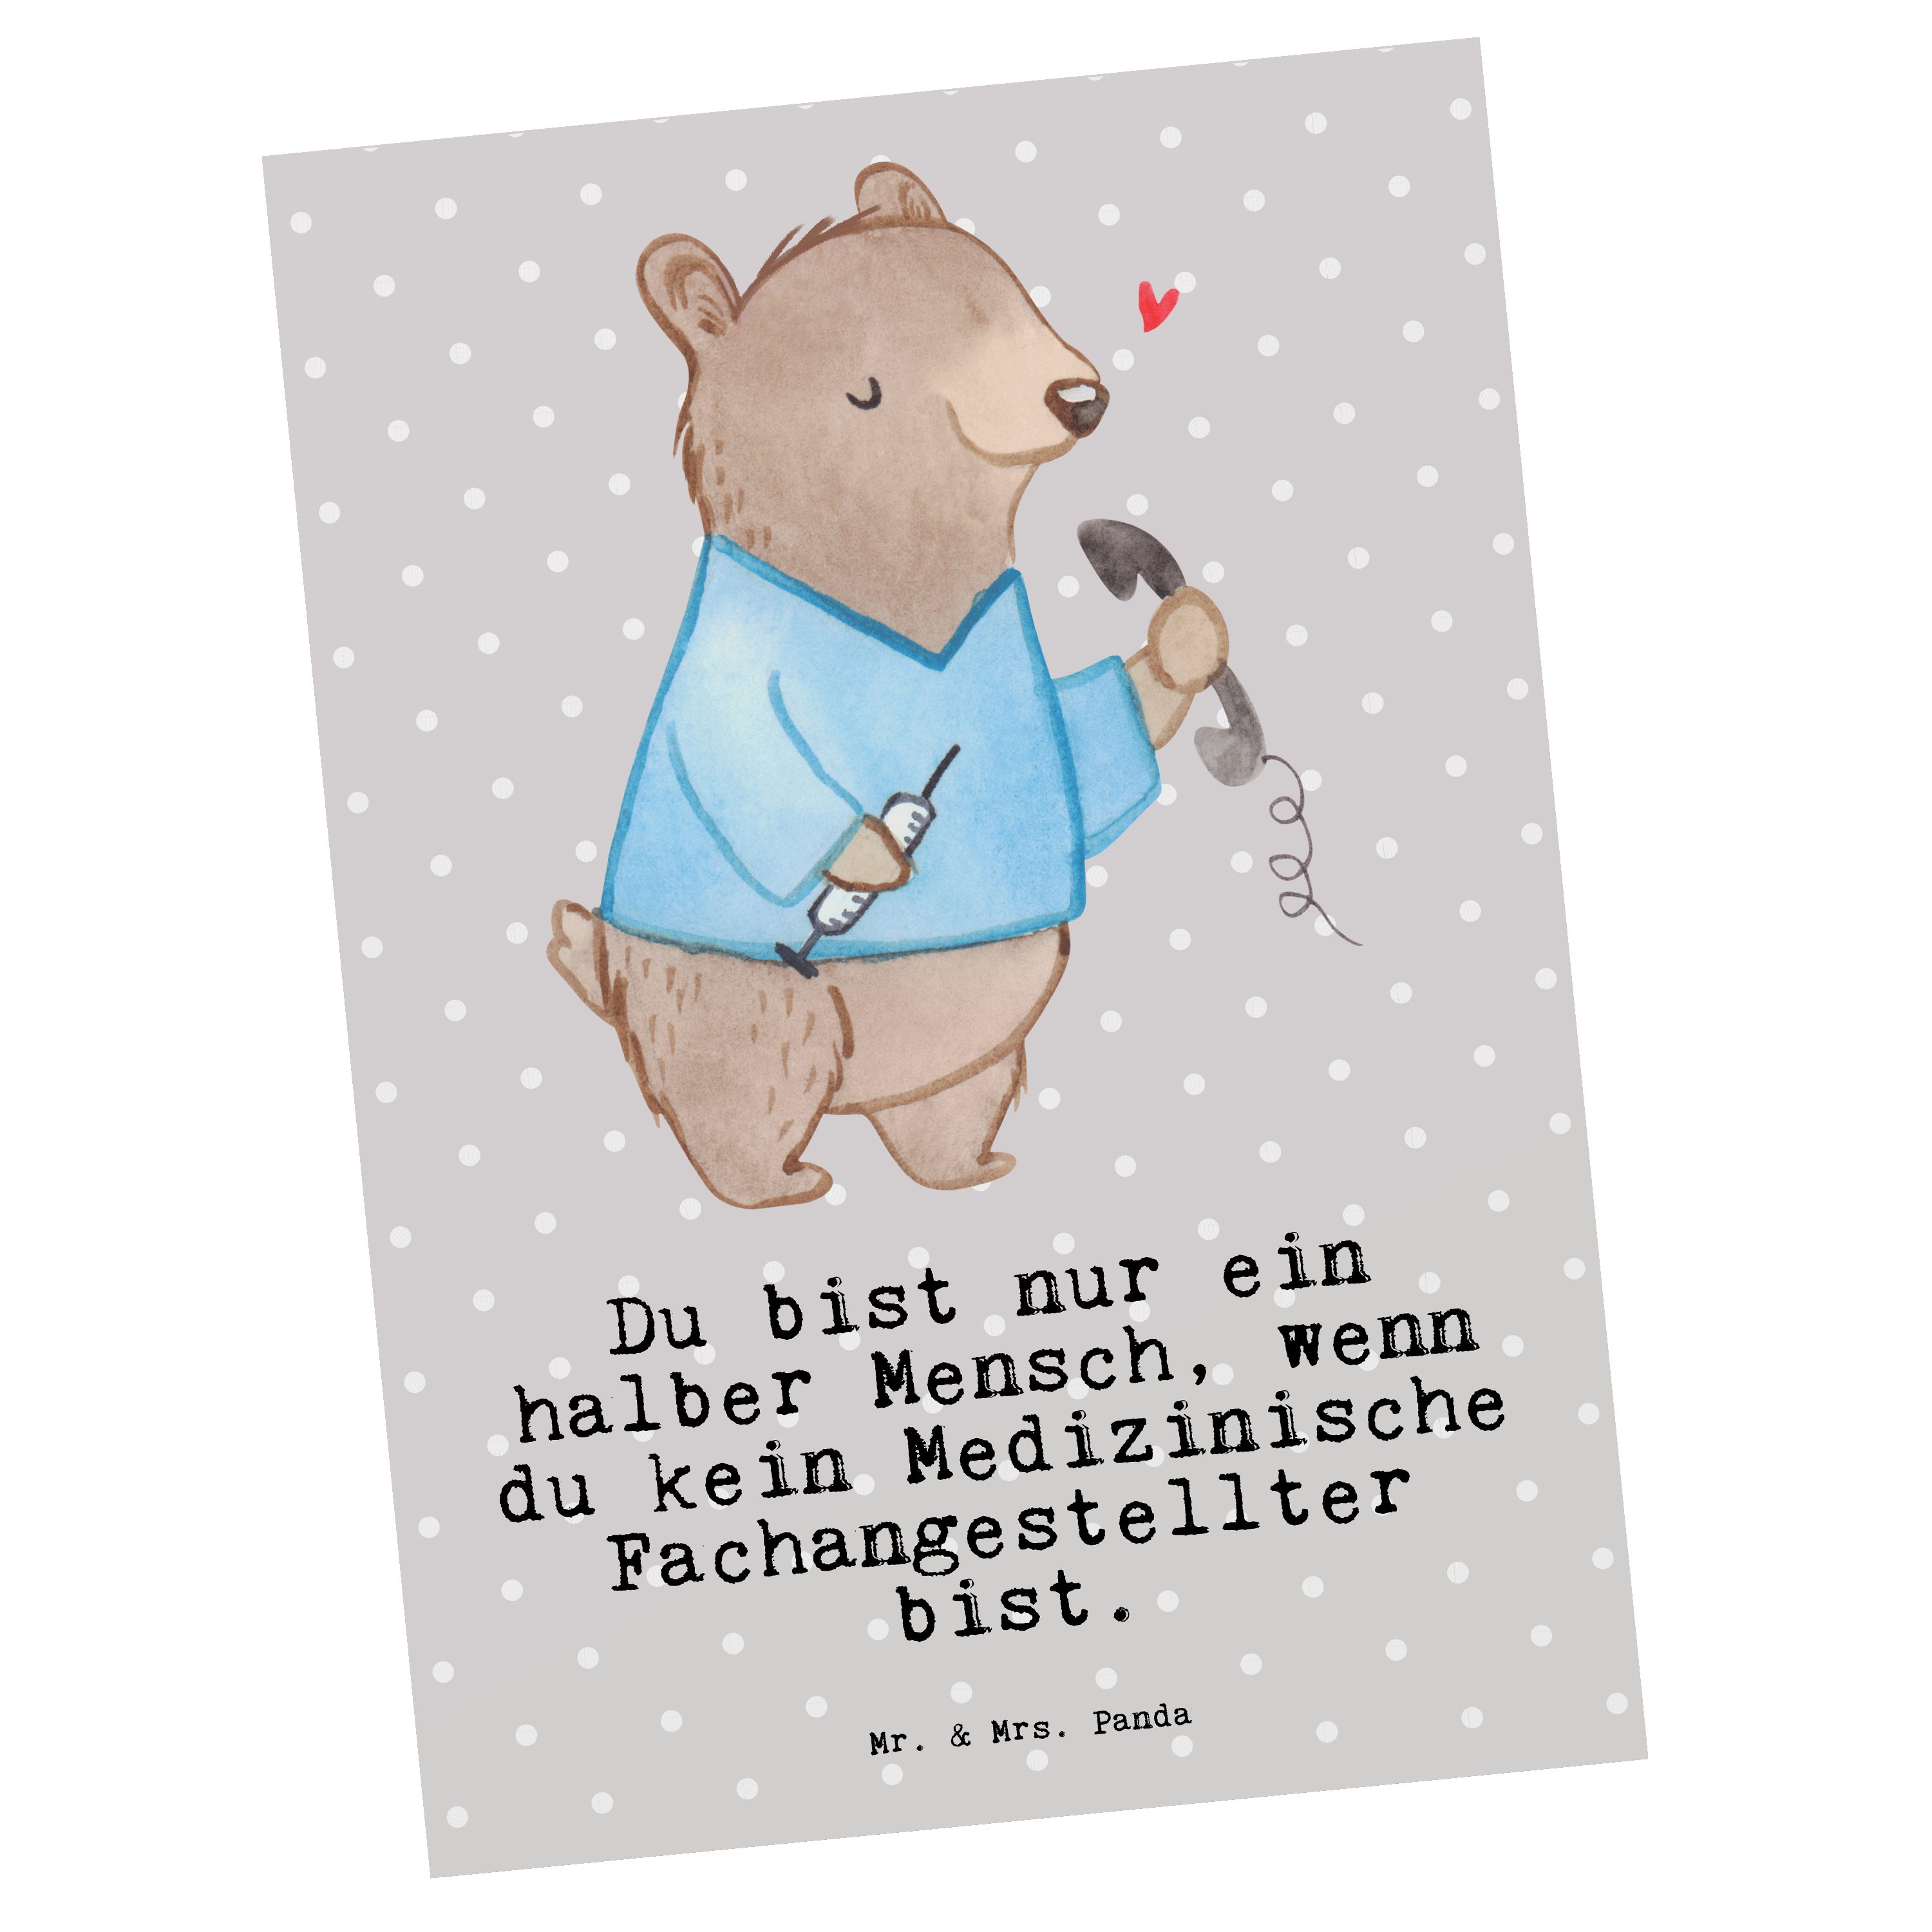 Mr. & Mrs. Panda Postkarte Medizinische Fachangestellter mit Herz - Grau Pastell - Geschenk, Arz